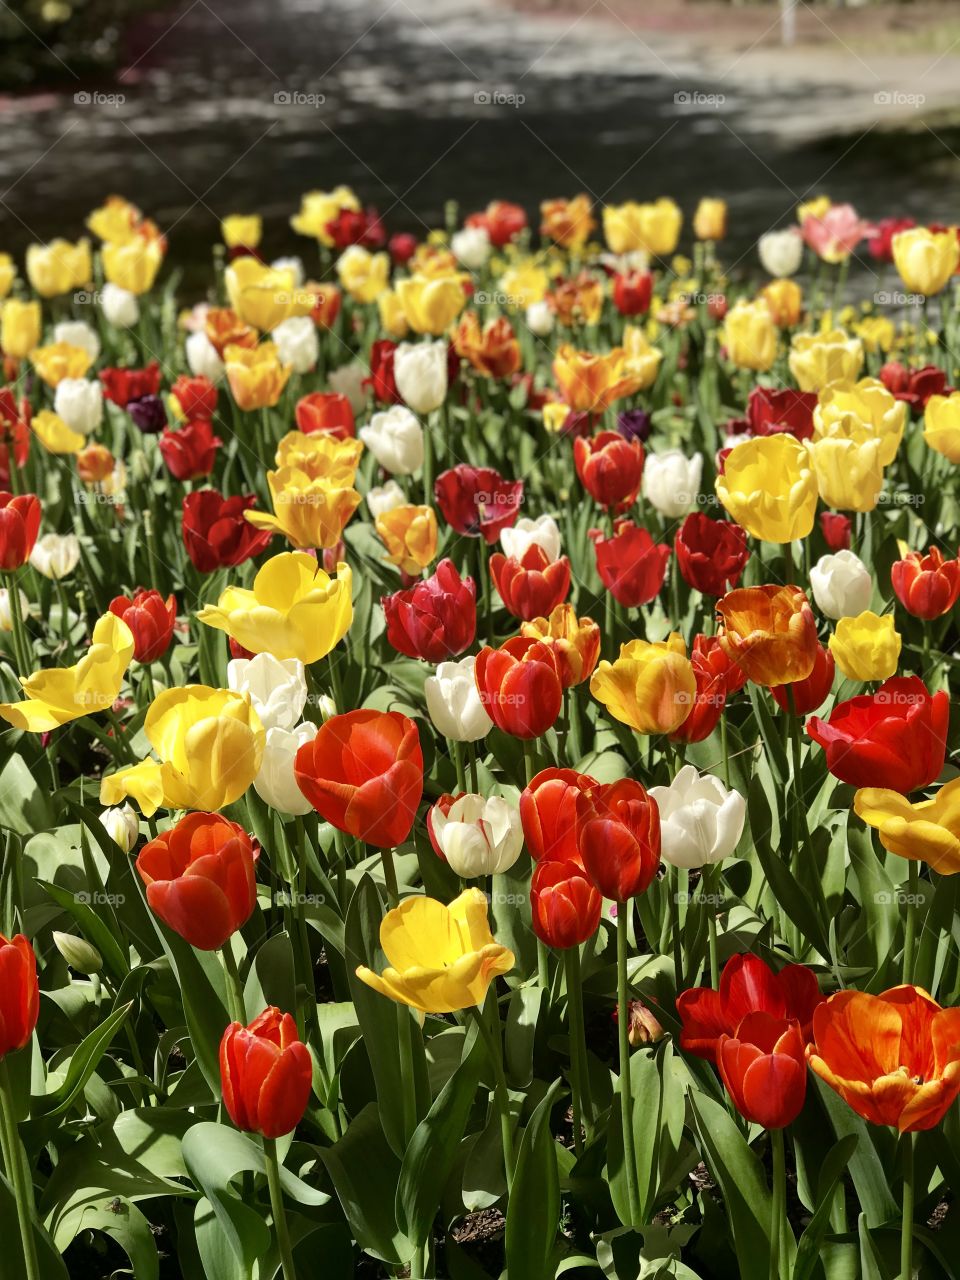 Tulip garden Canberra 2018